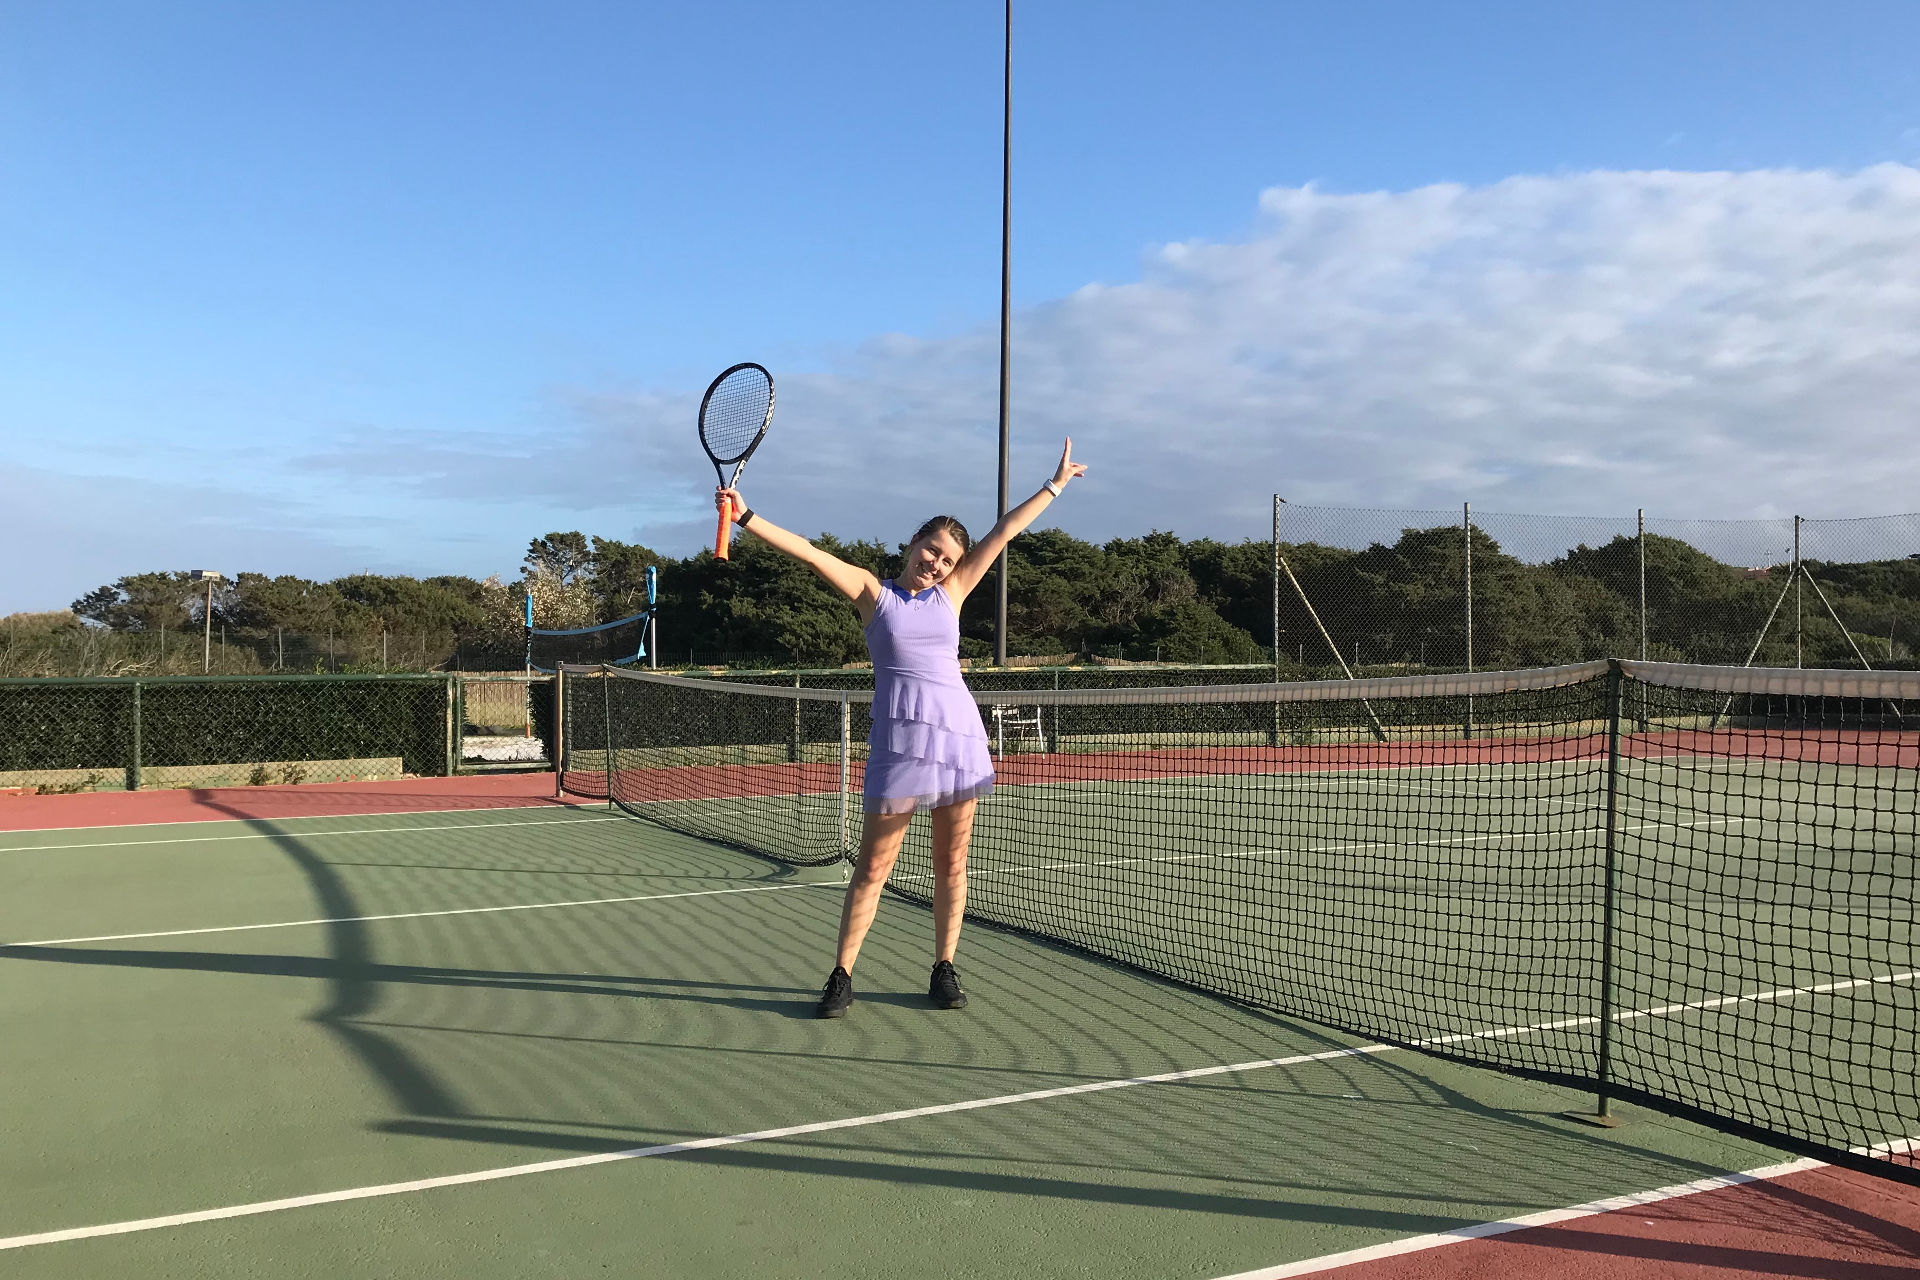 Playing tennis in Sardegna